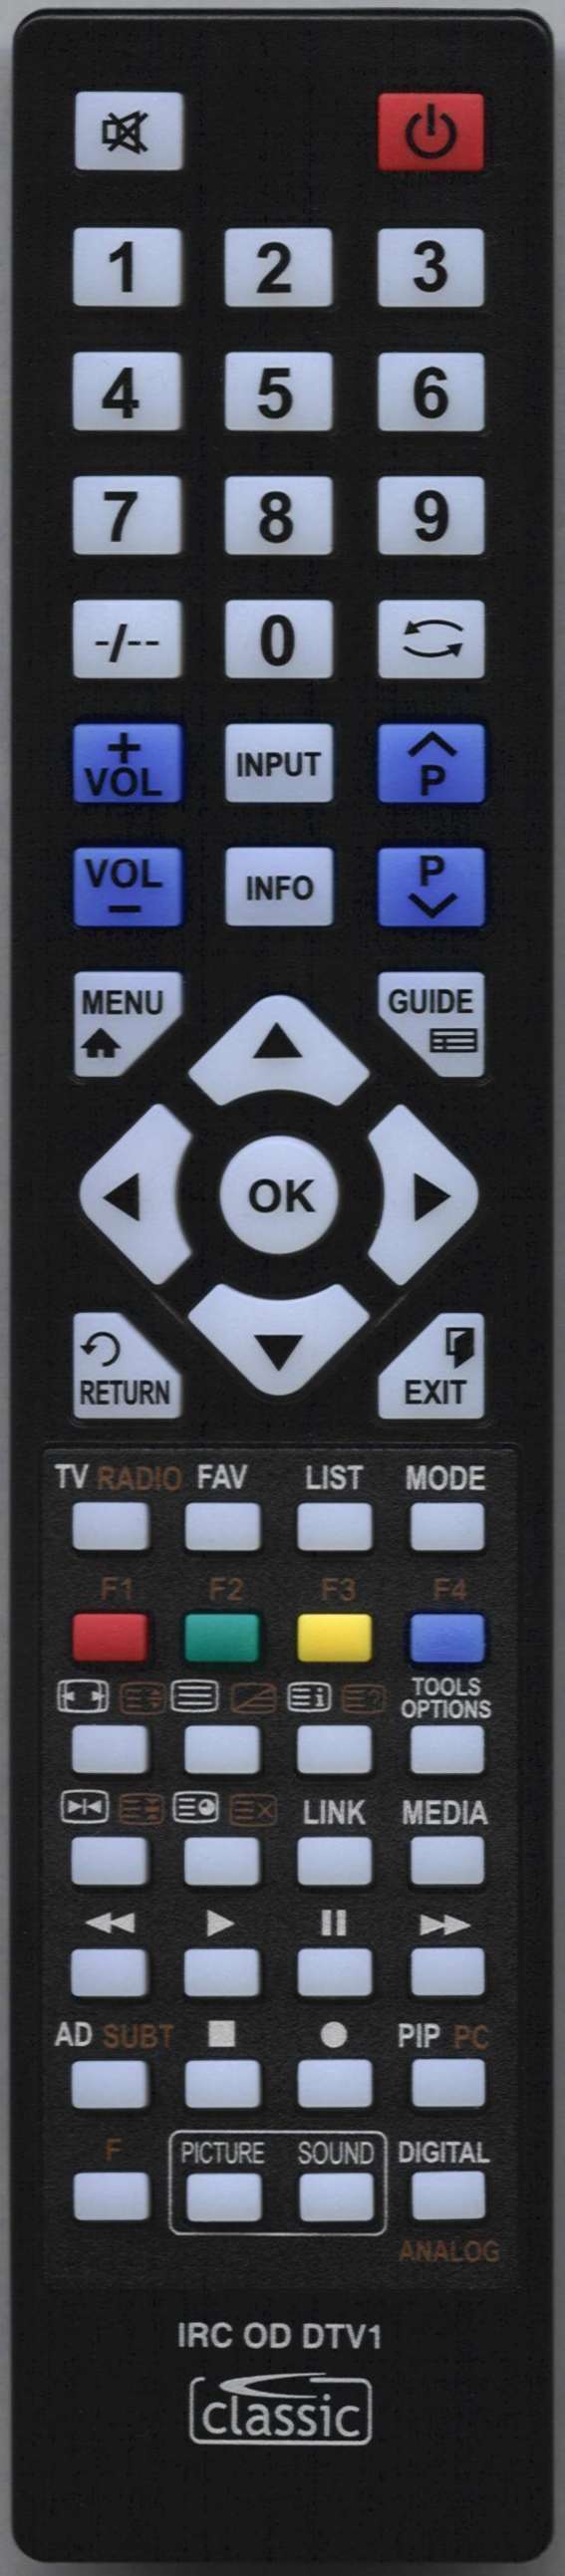 LG 43UM7450 Remote Control Alternative